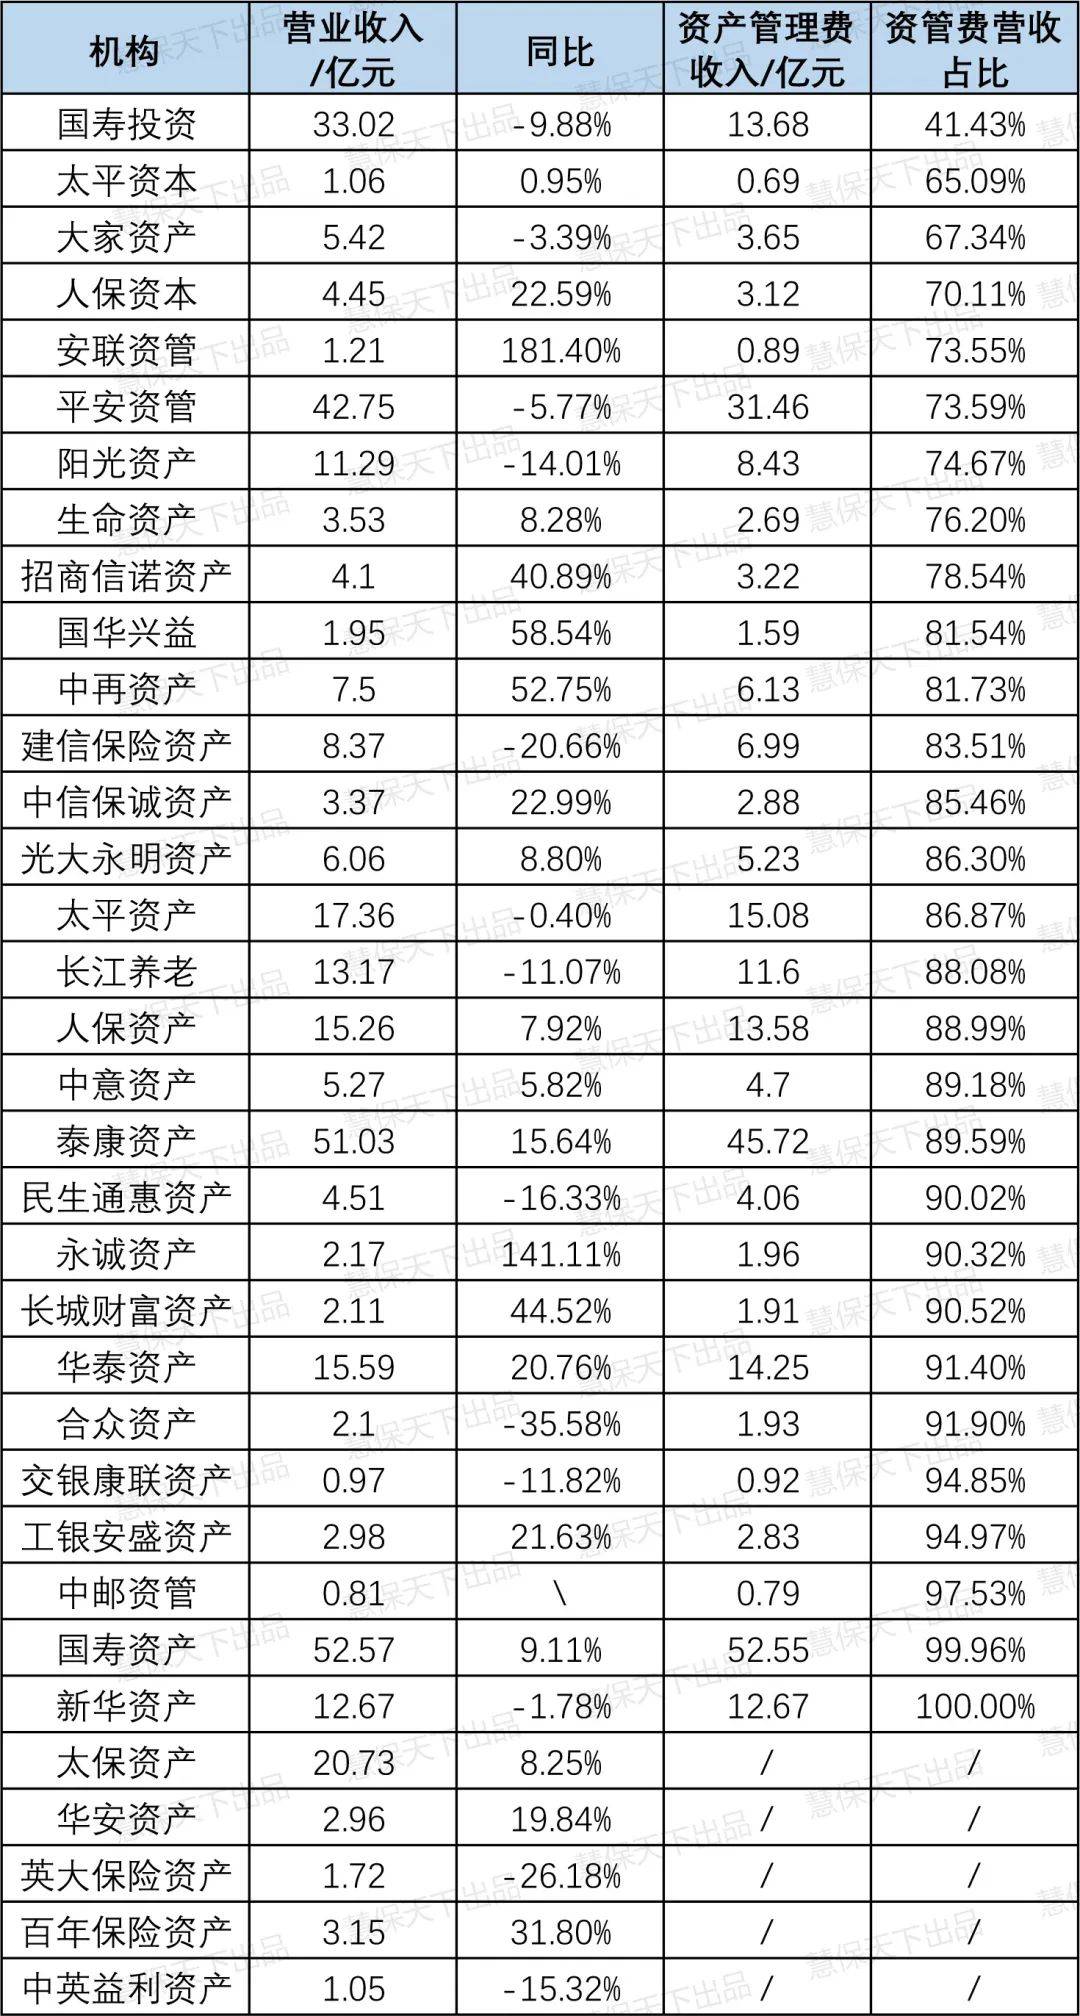 国寿平安泰康三大头部保险资管利润占比过半,四成公司营收下滑